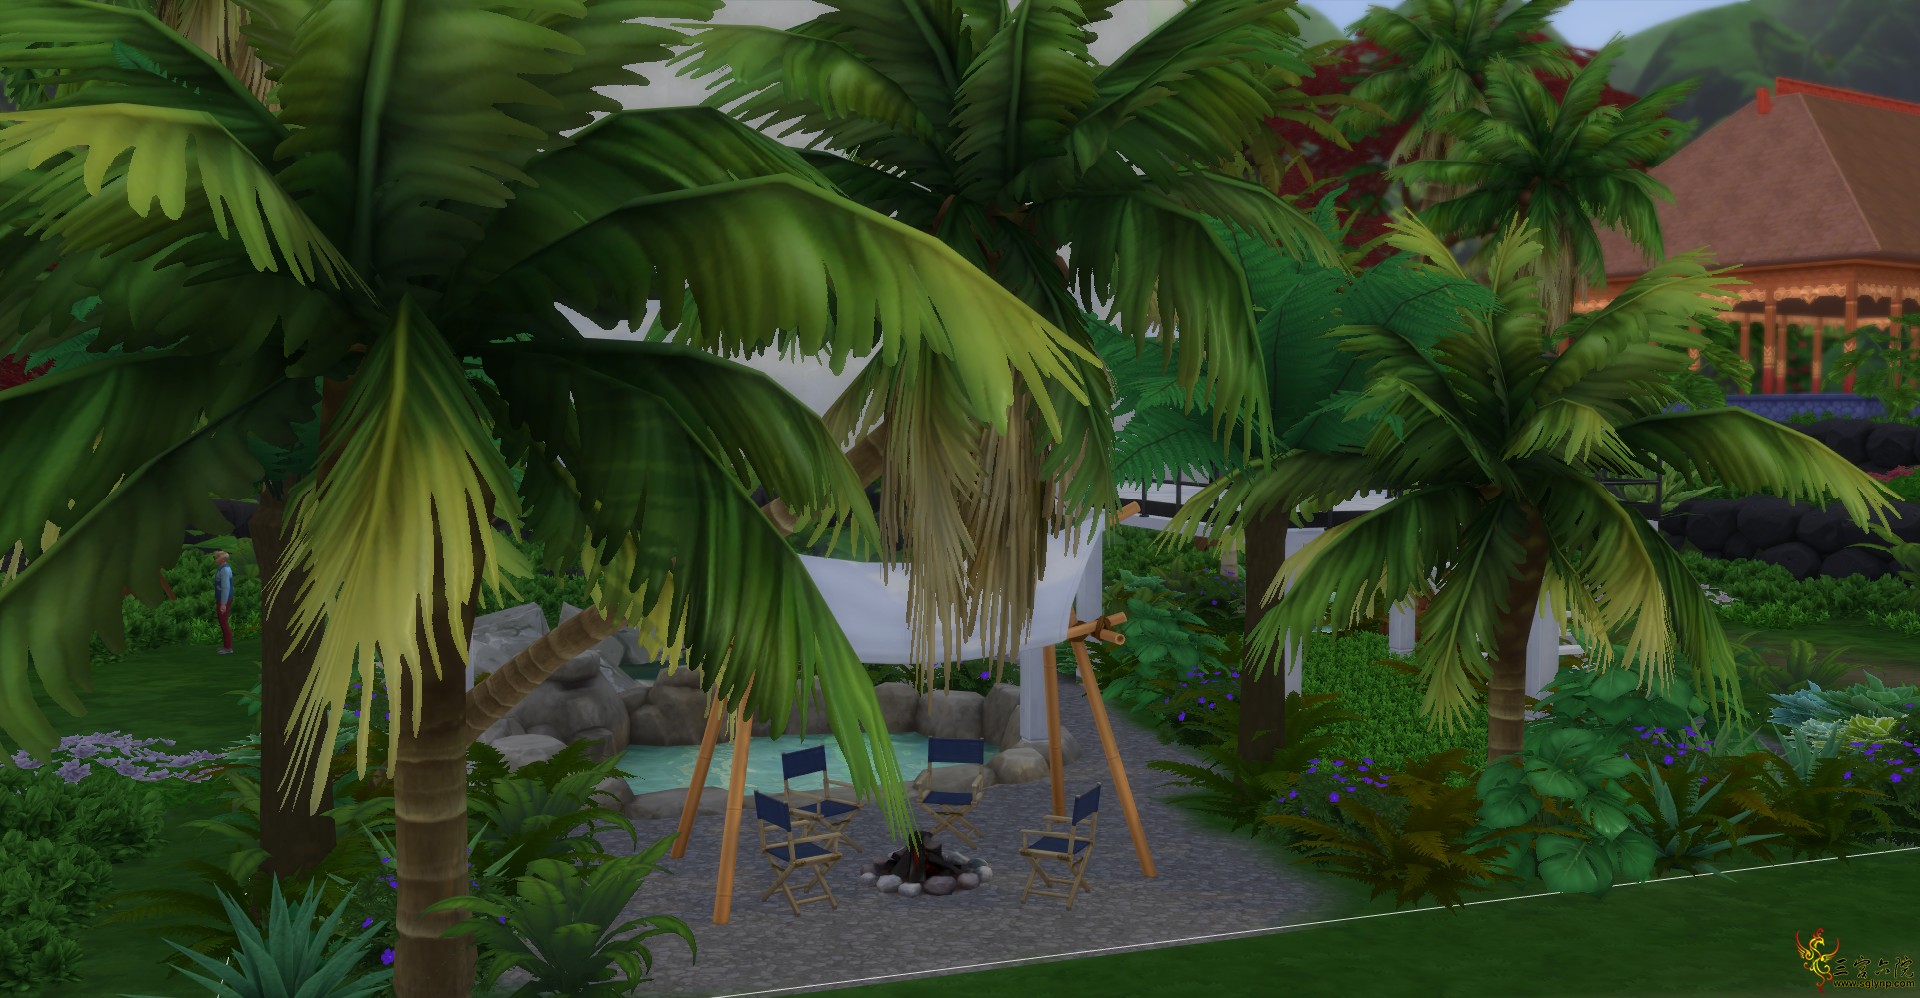 Sims 4 Screenshot 2021.04.24 - 19.55.30.21.png